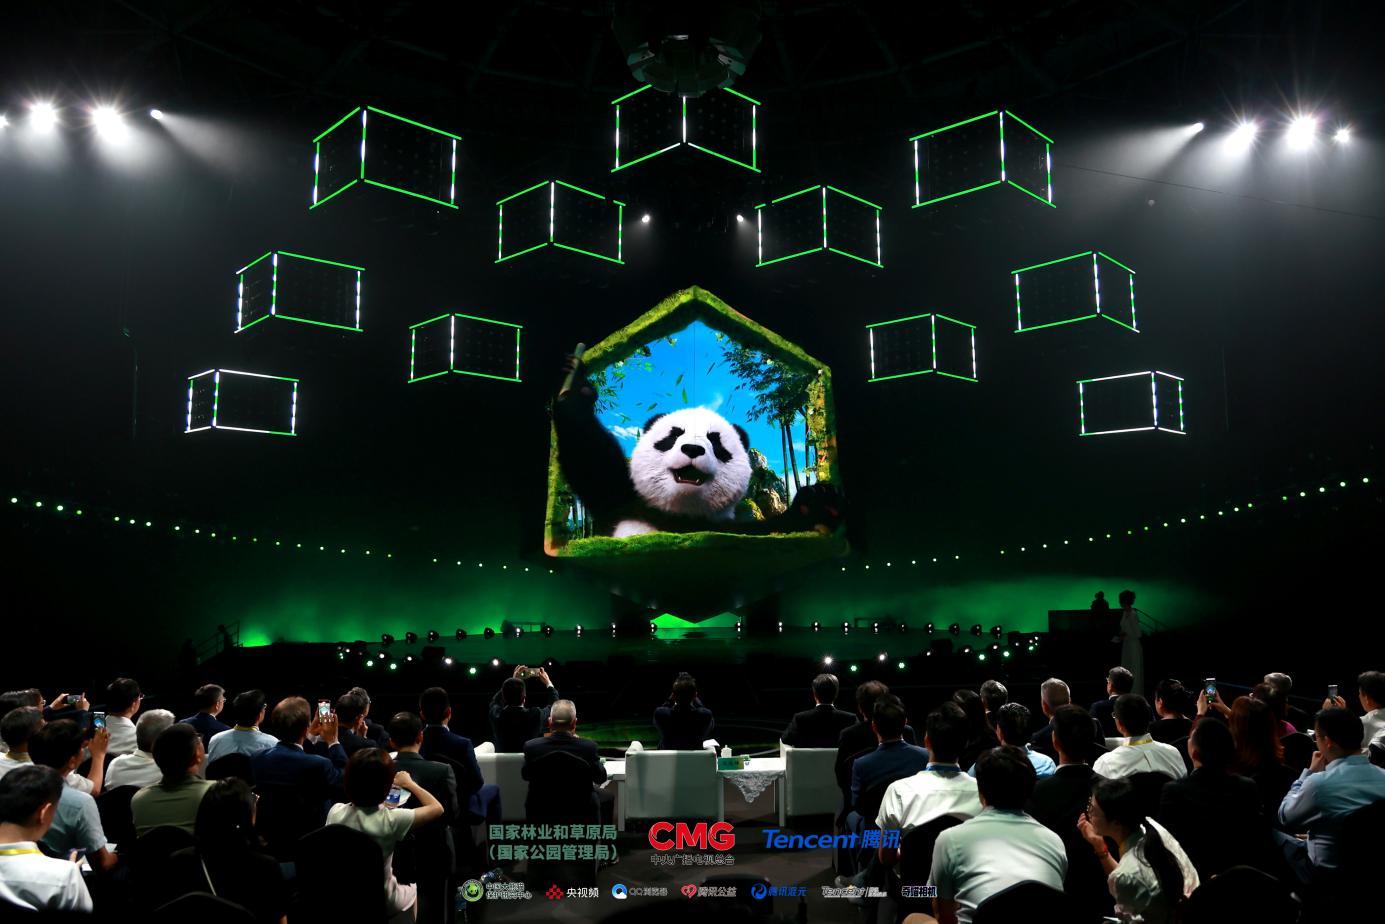 惊艳现身！国家林业和草原局联合中央广播电视总台、腾讯发布全球首只“全真大熊猫”